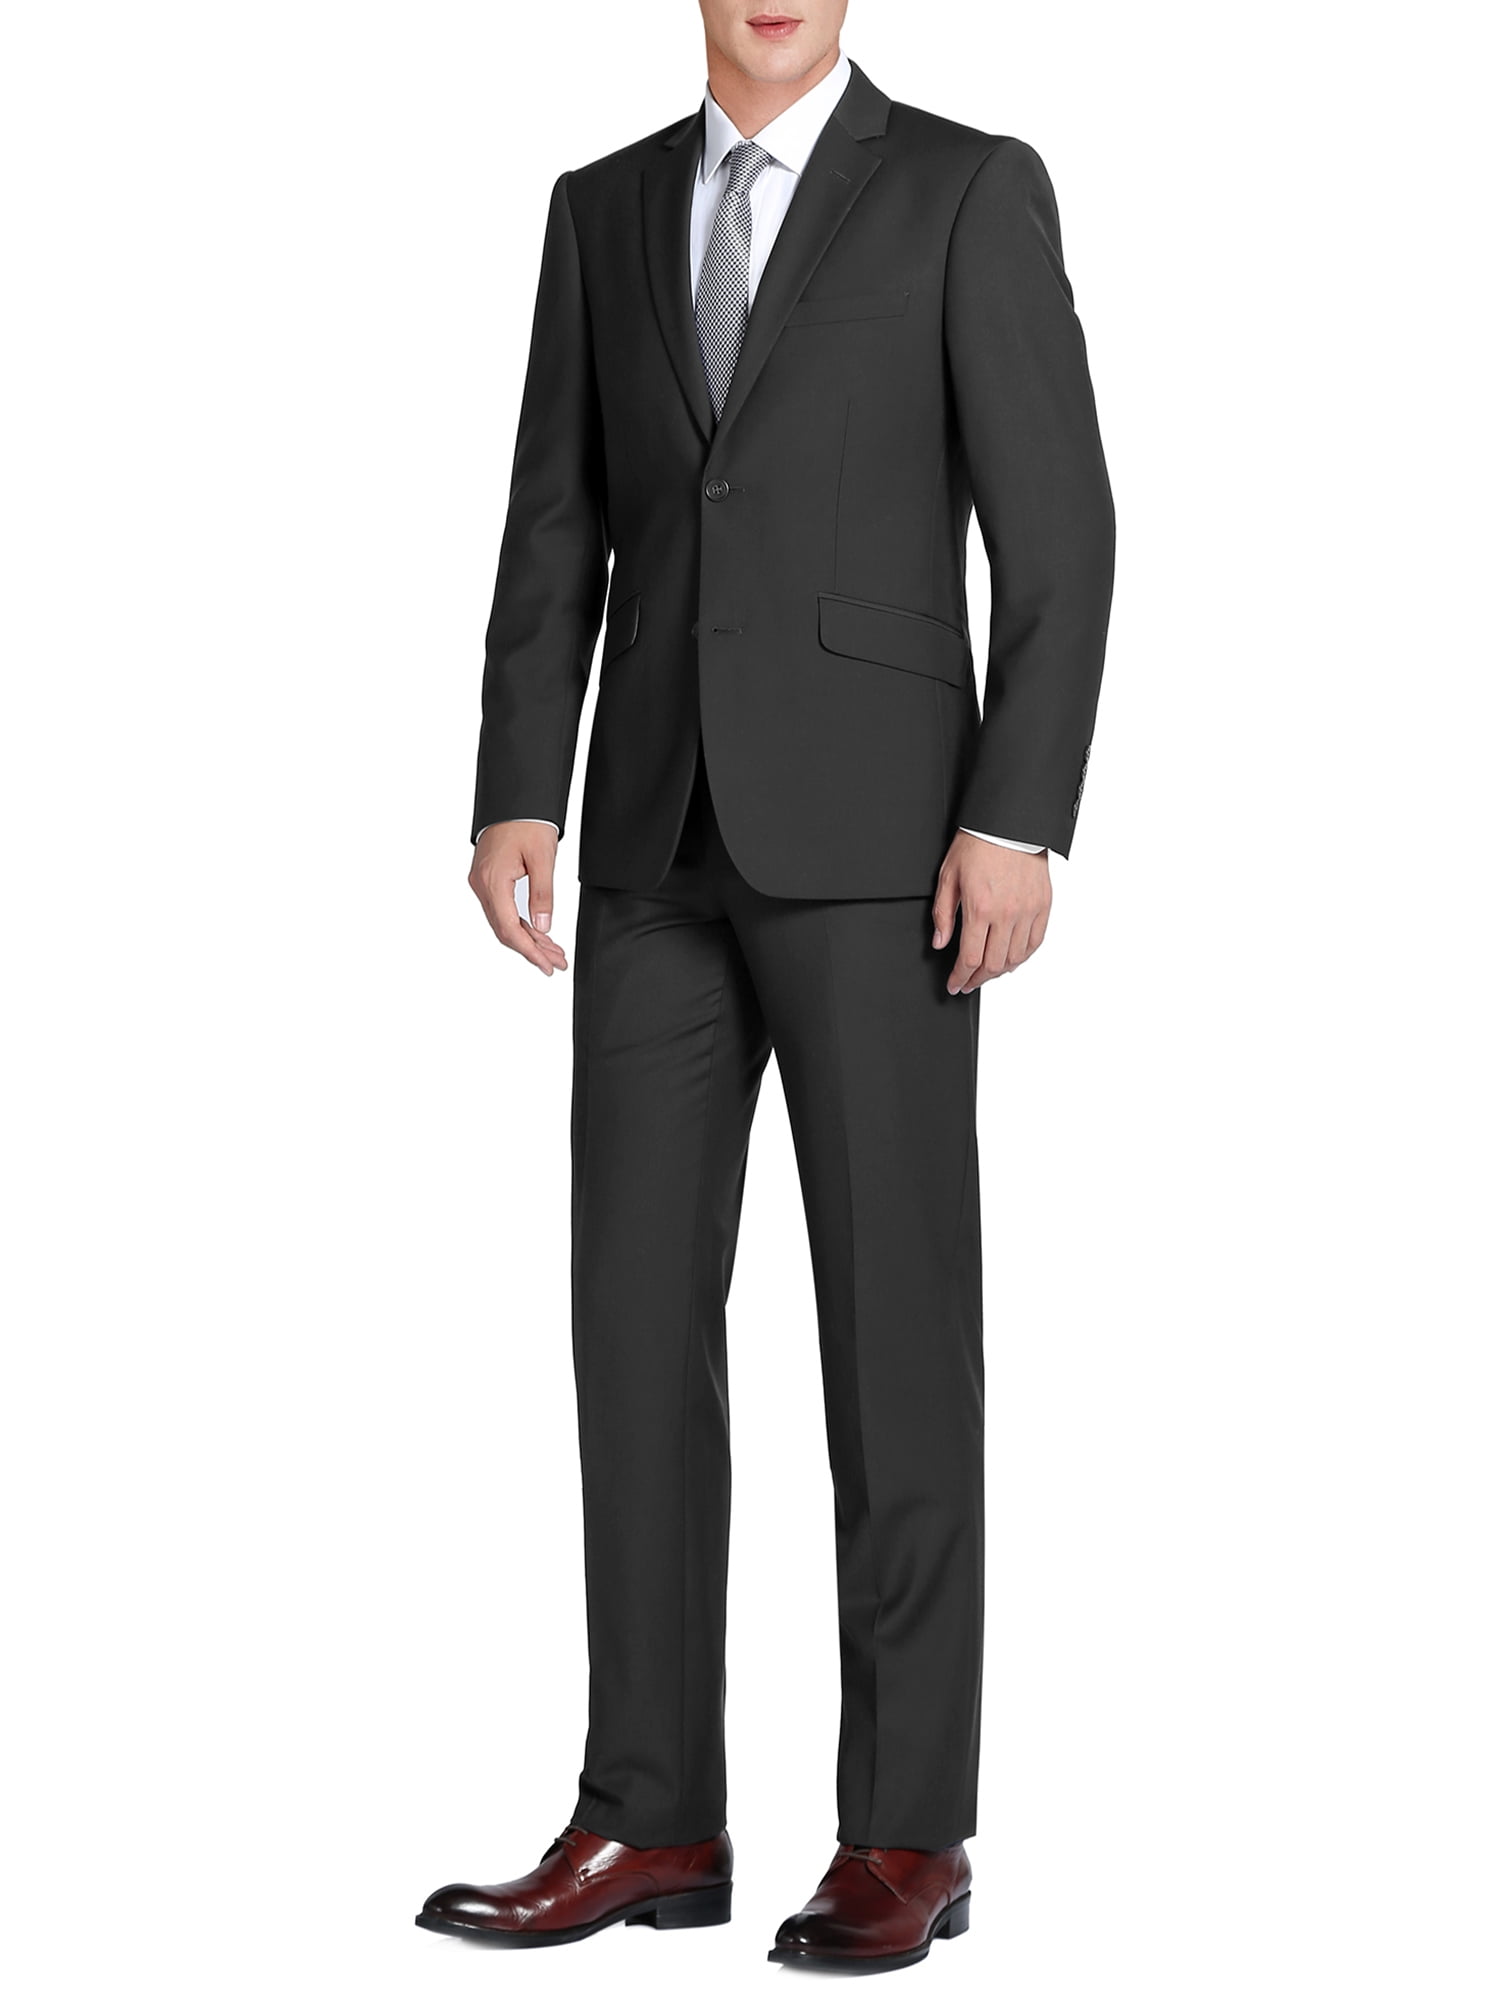 Kelaixiang Mens Two-Piece Classic Fit Office 2 Button Suit Jacket & Pants Set